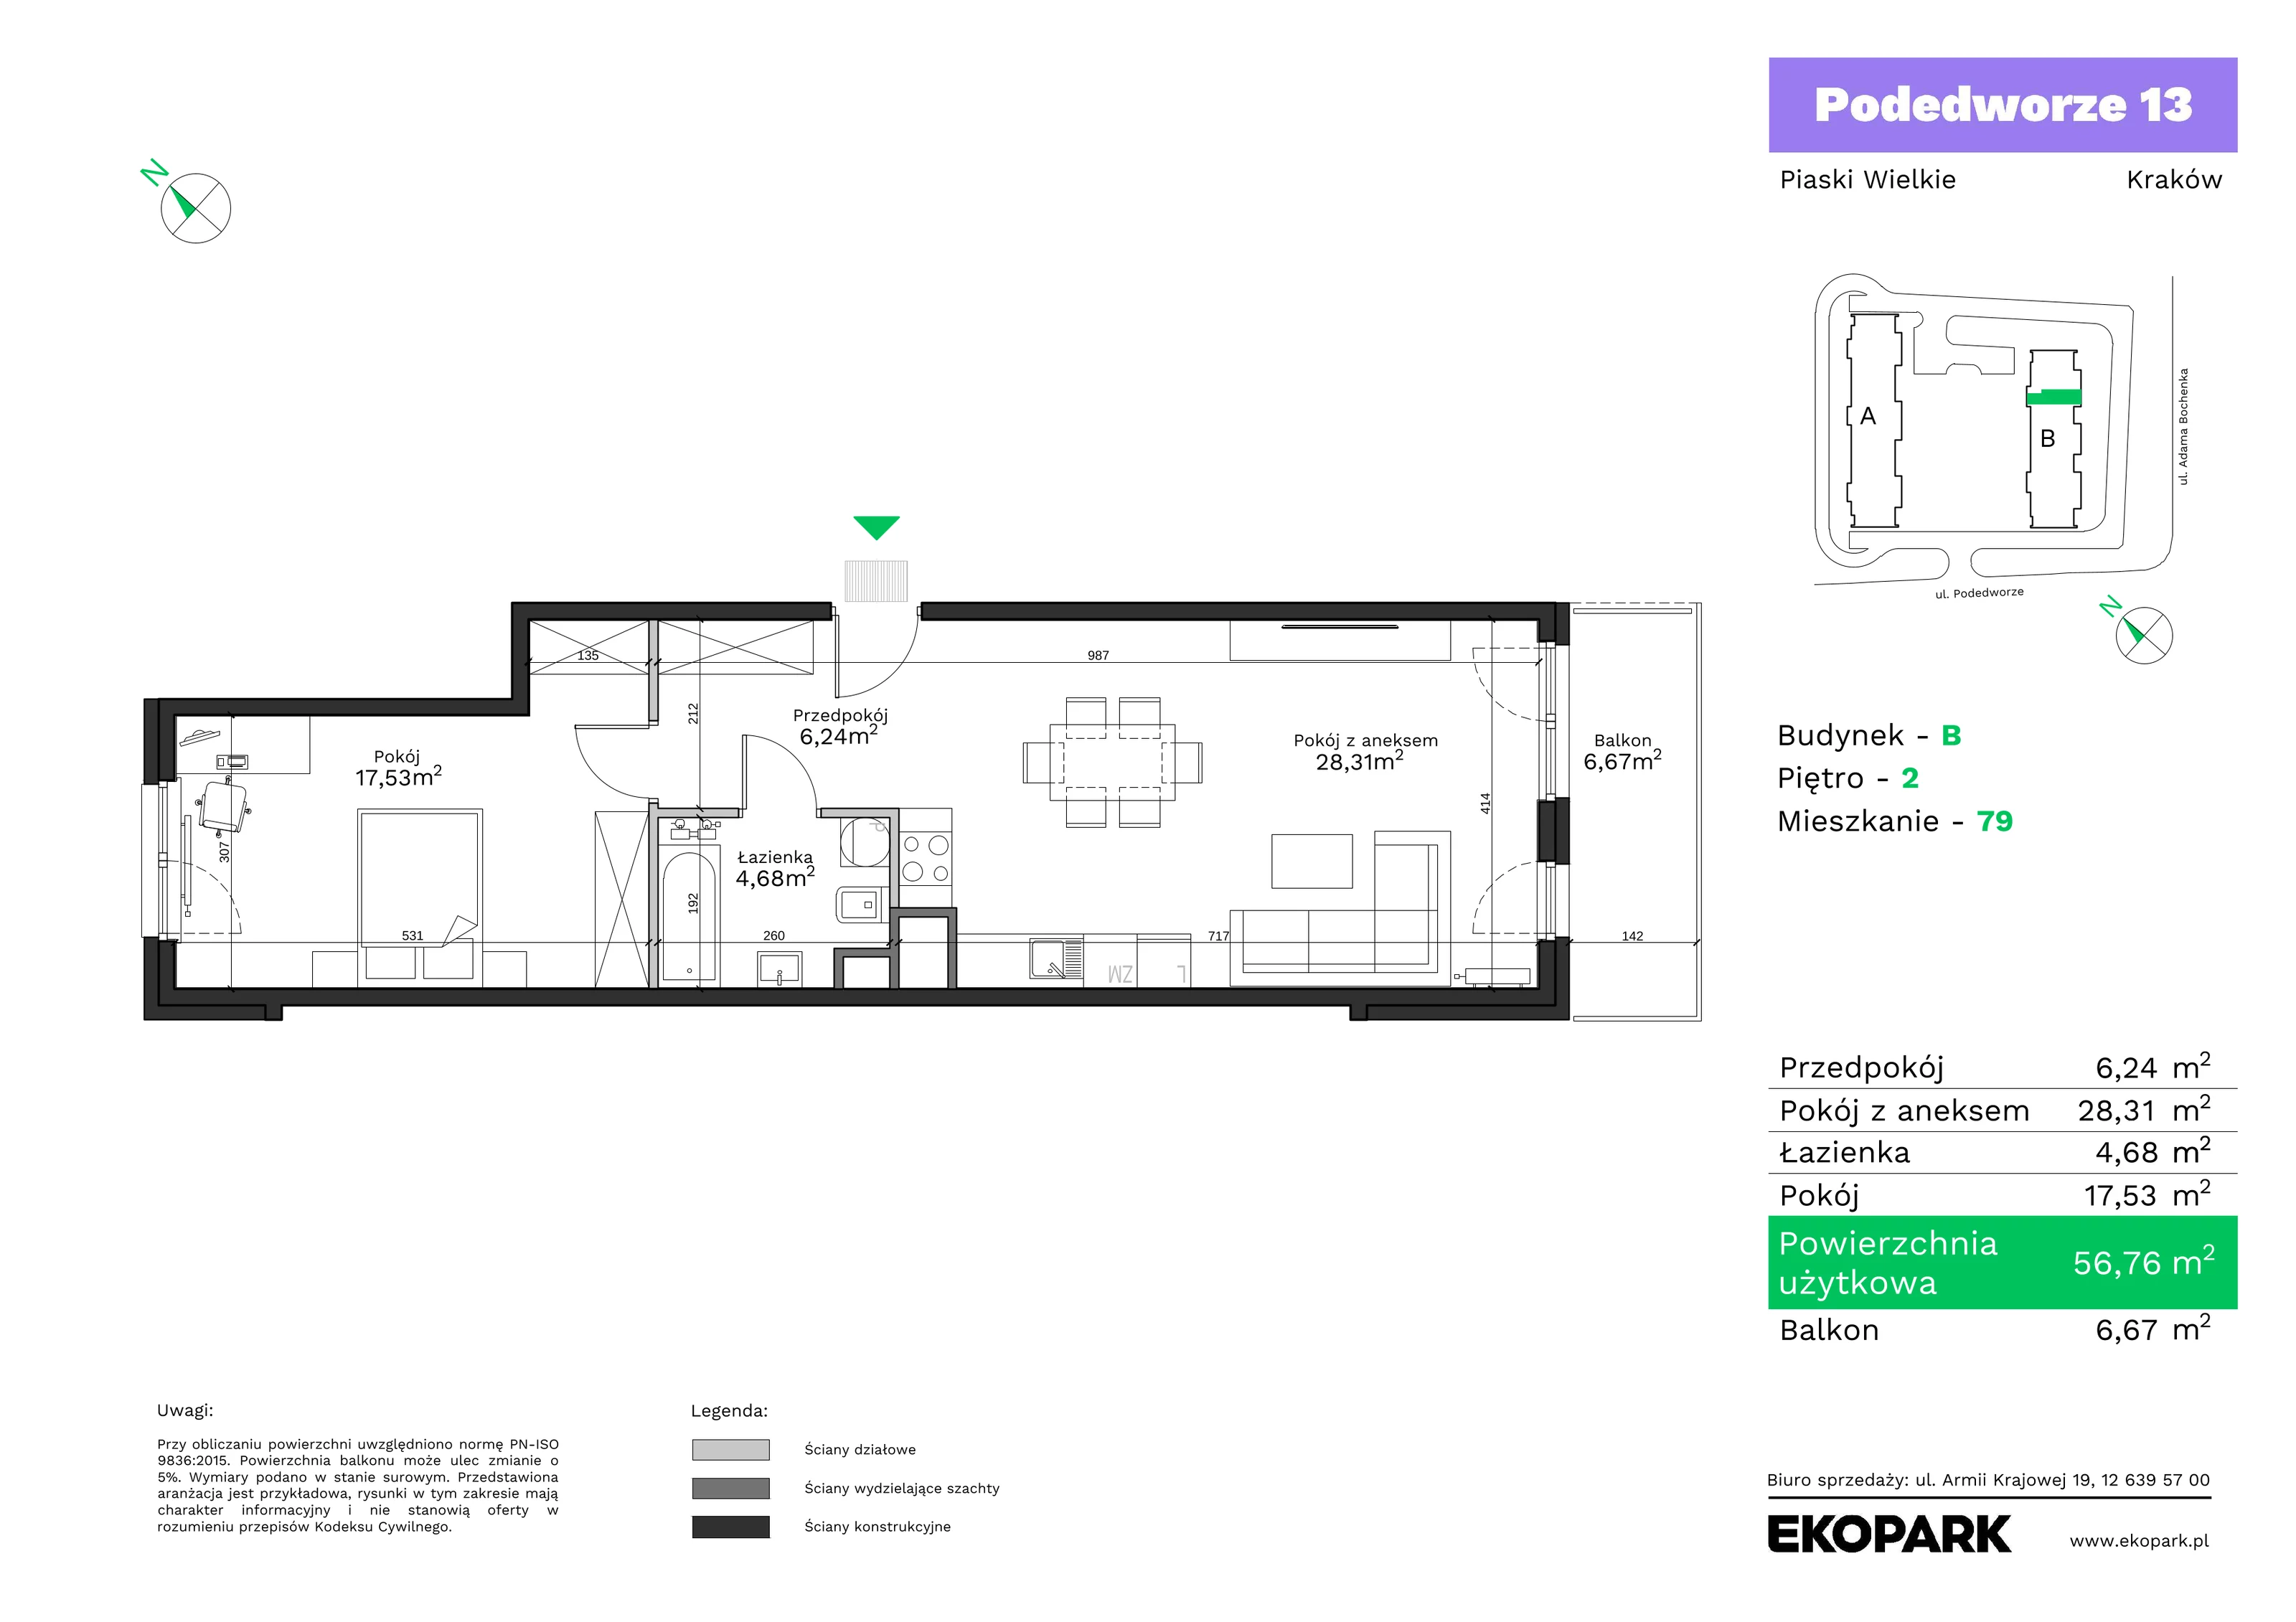 Mieszkanie 56,76 m², piętro 2, oferta nr B79, Podedworze 13, Kraków, Podgórze Duchackie, Piaski Wielkie, ul. Podedworze 13